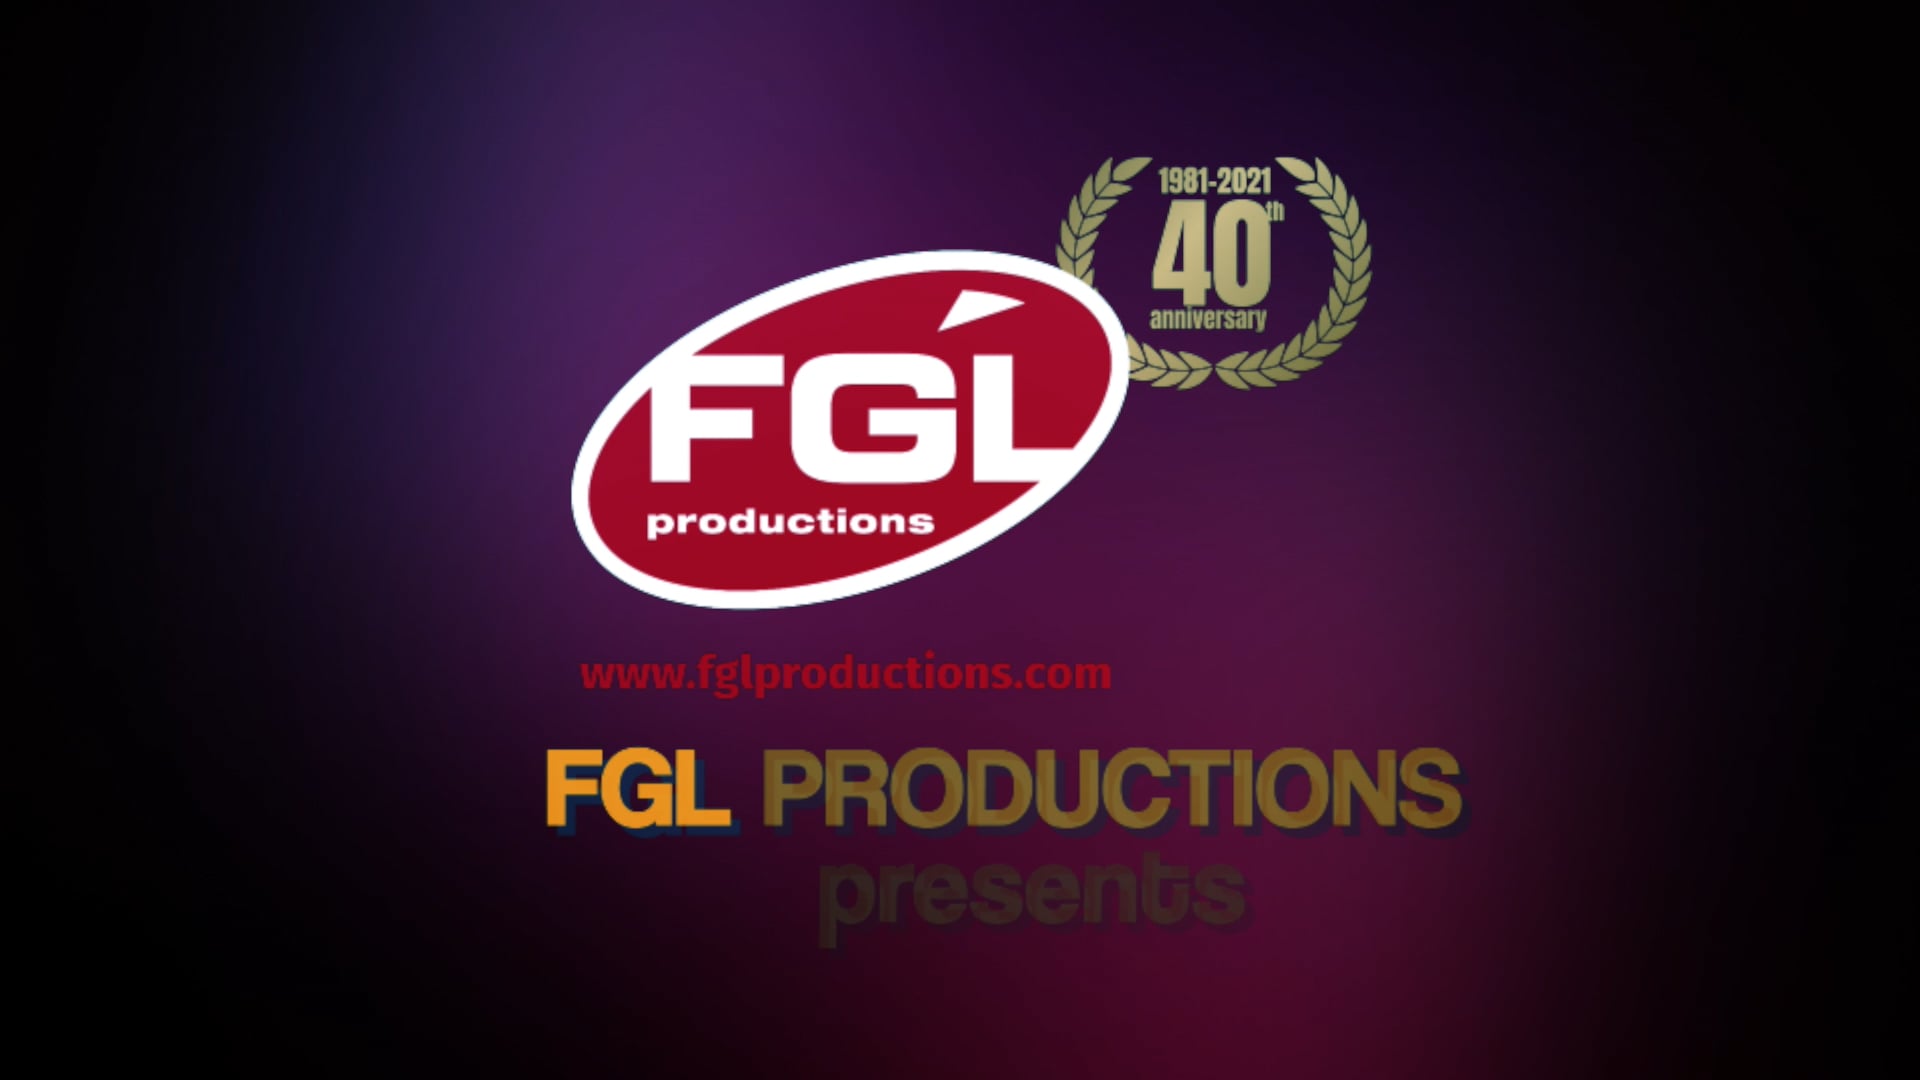 FGLPRODUCTIONS.COM